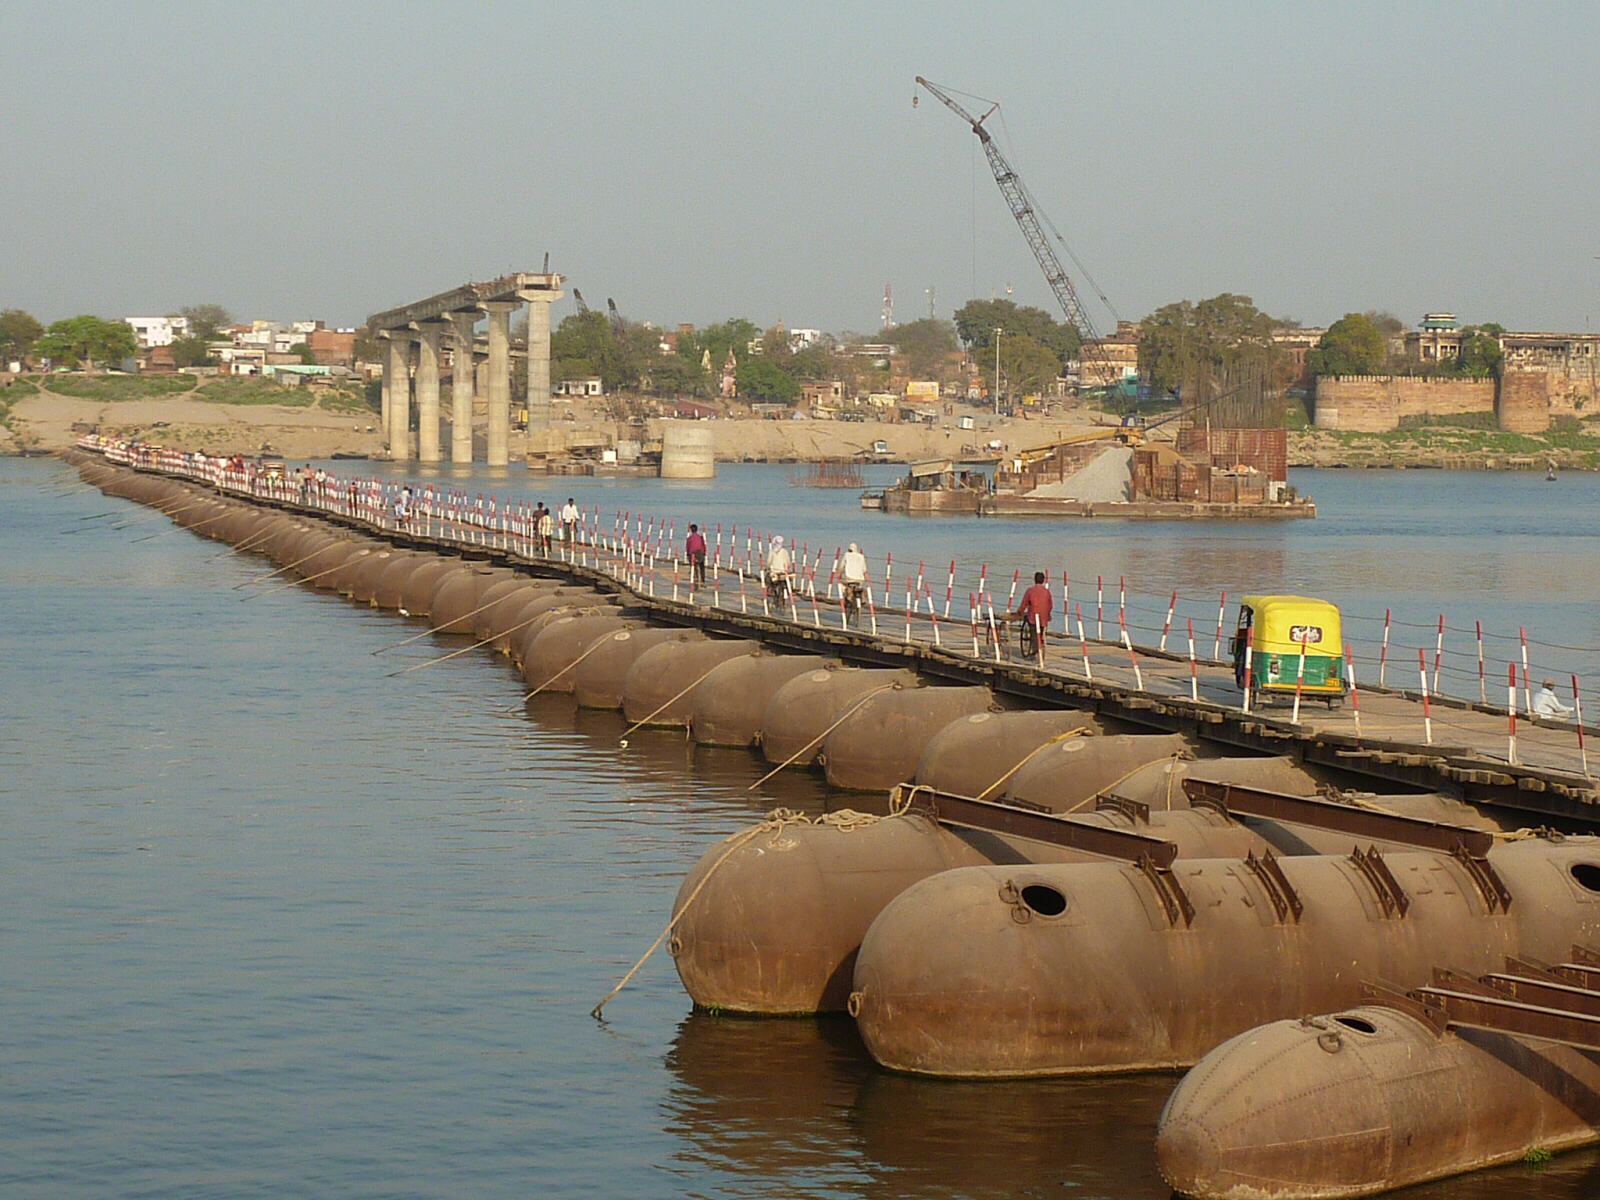 Pontoon bridge across the Ganges near Varanasi, India